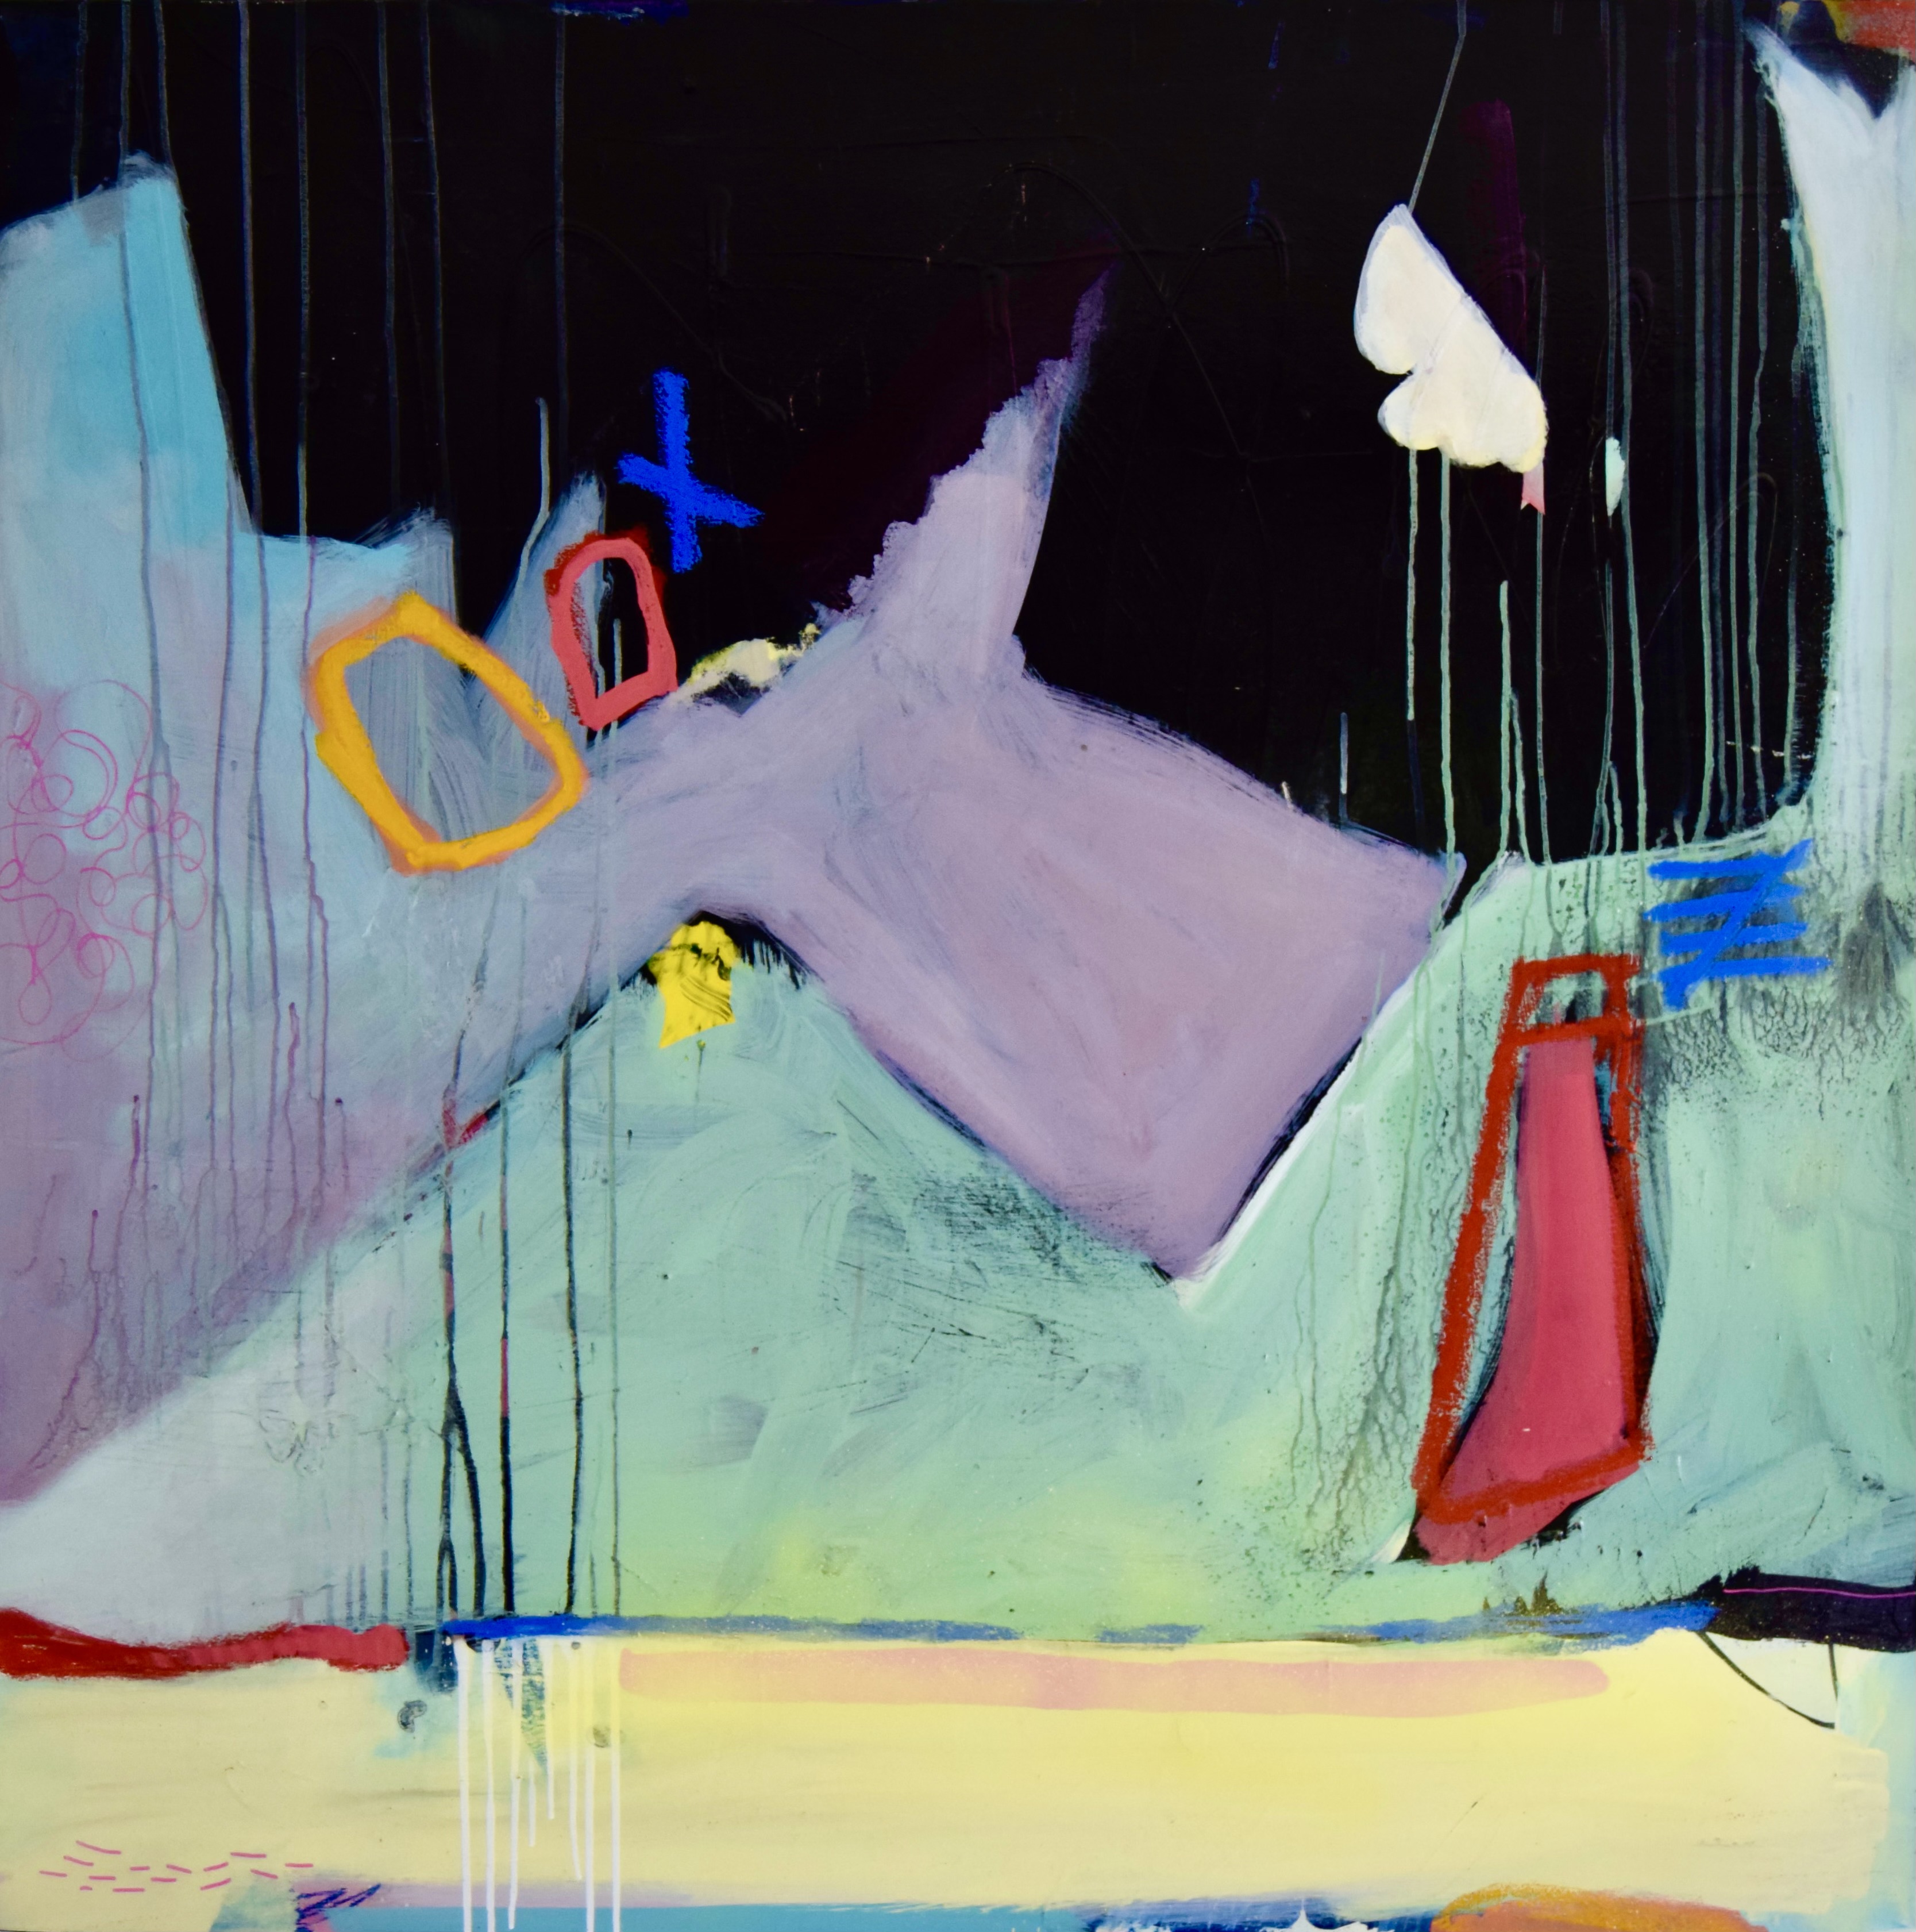 Ellen Dieter, Midnight Shenanigans, 2022. Acrylic on canvas, 40" x 40".